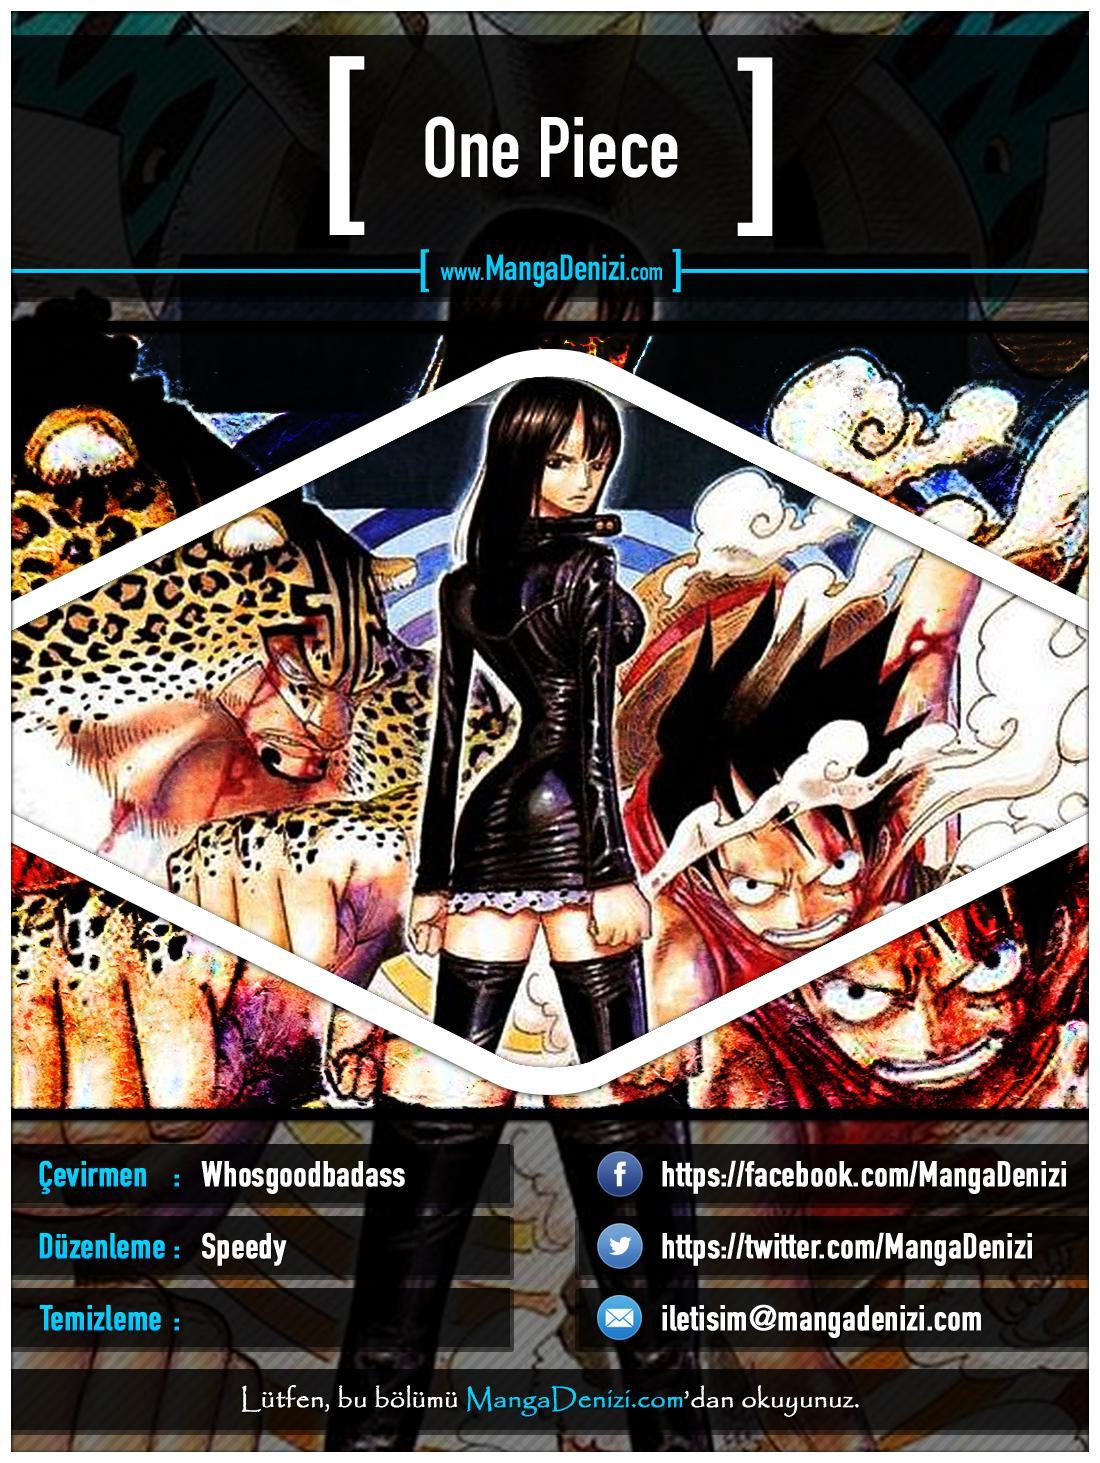 One Piece [Renkli] mangasının 0385 bölümünün 1. sayfasını okuyorsunuz.